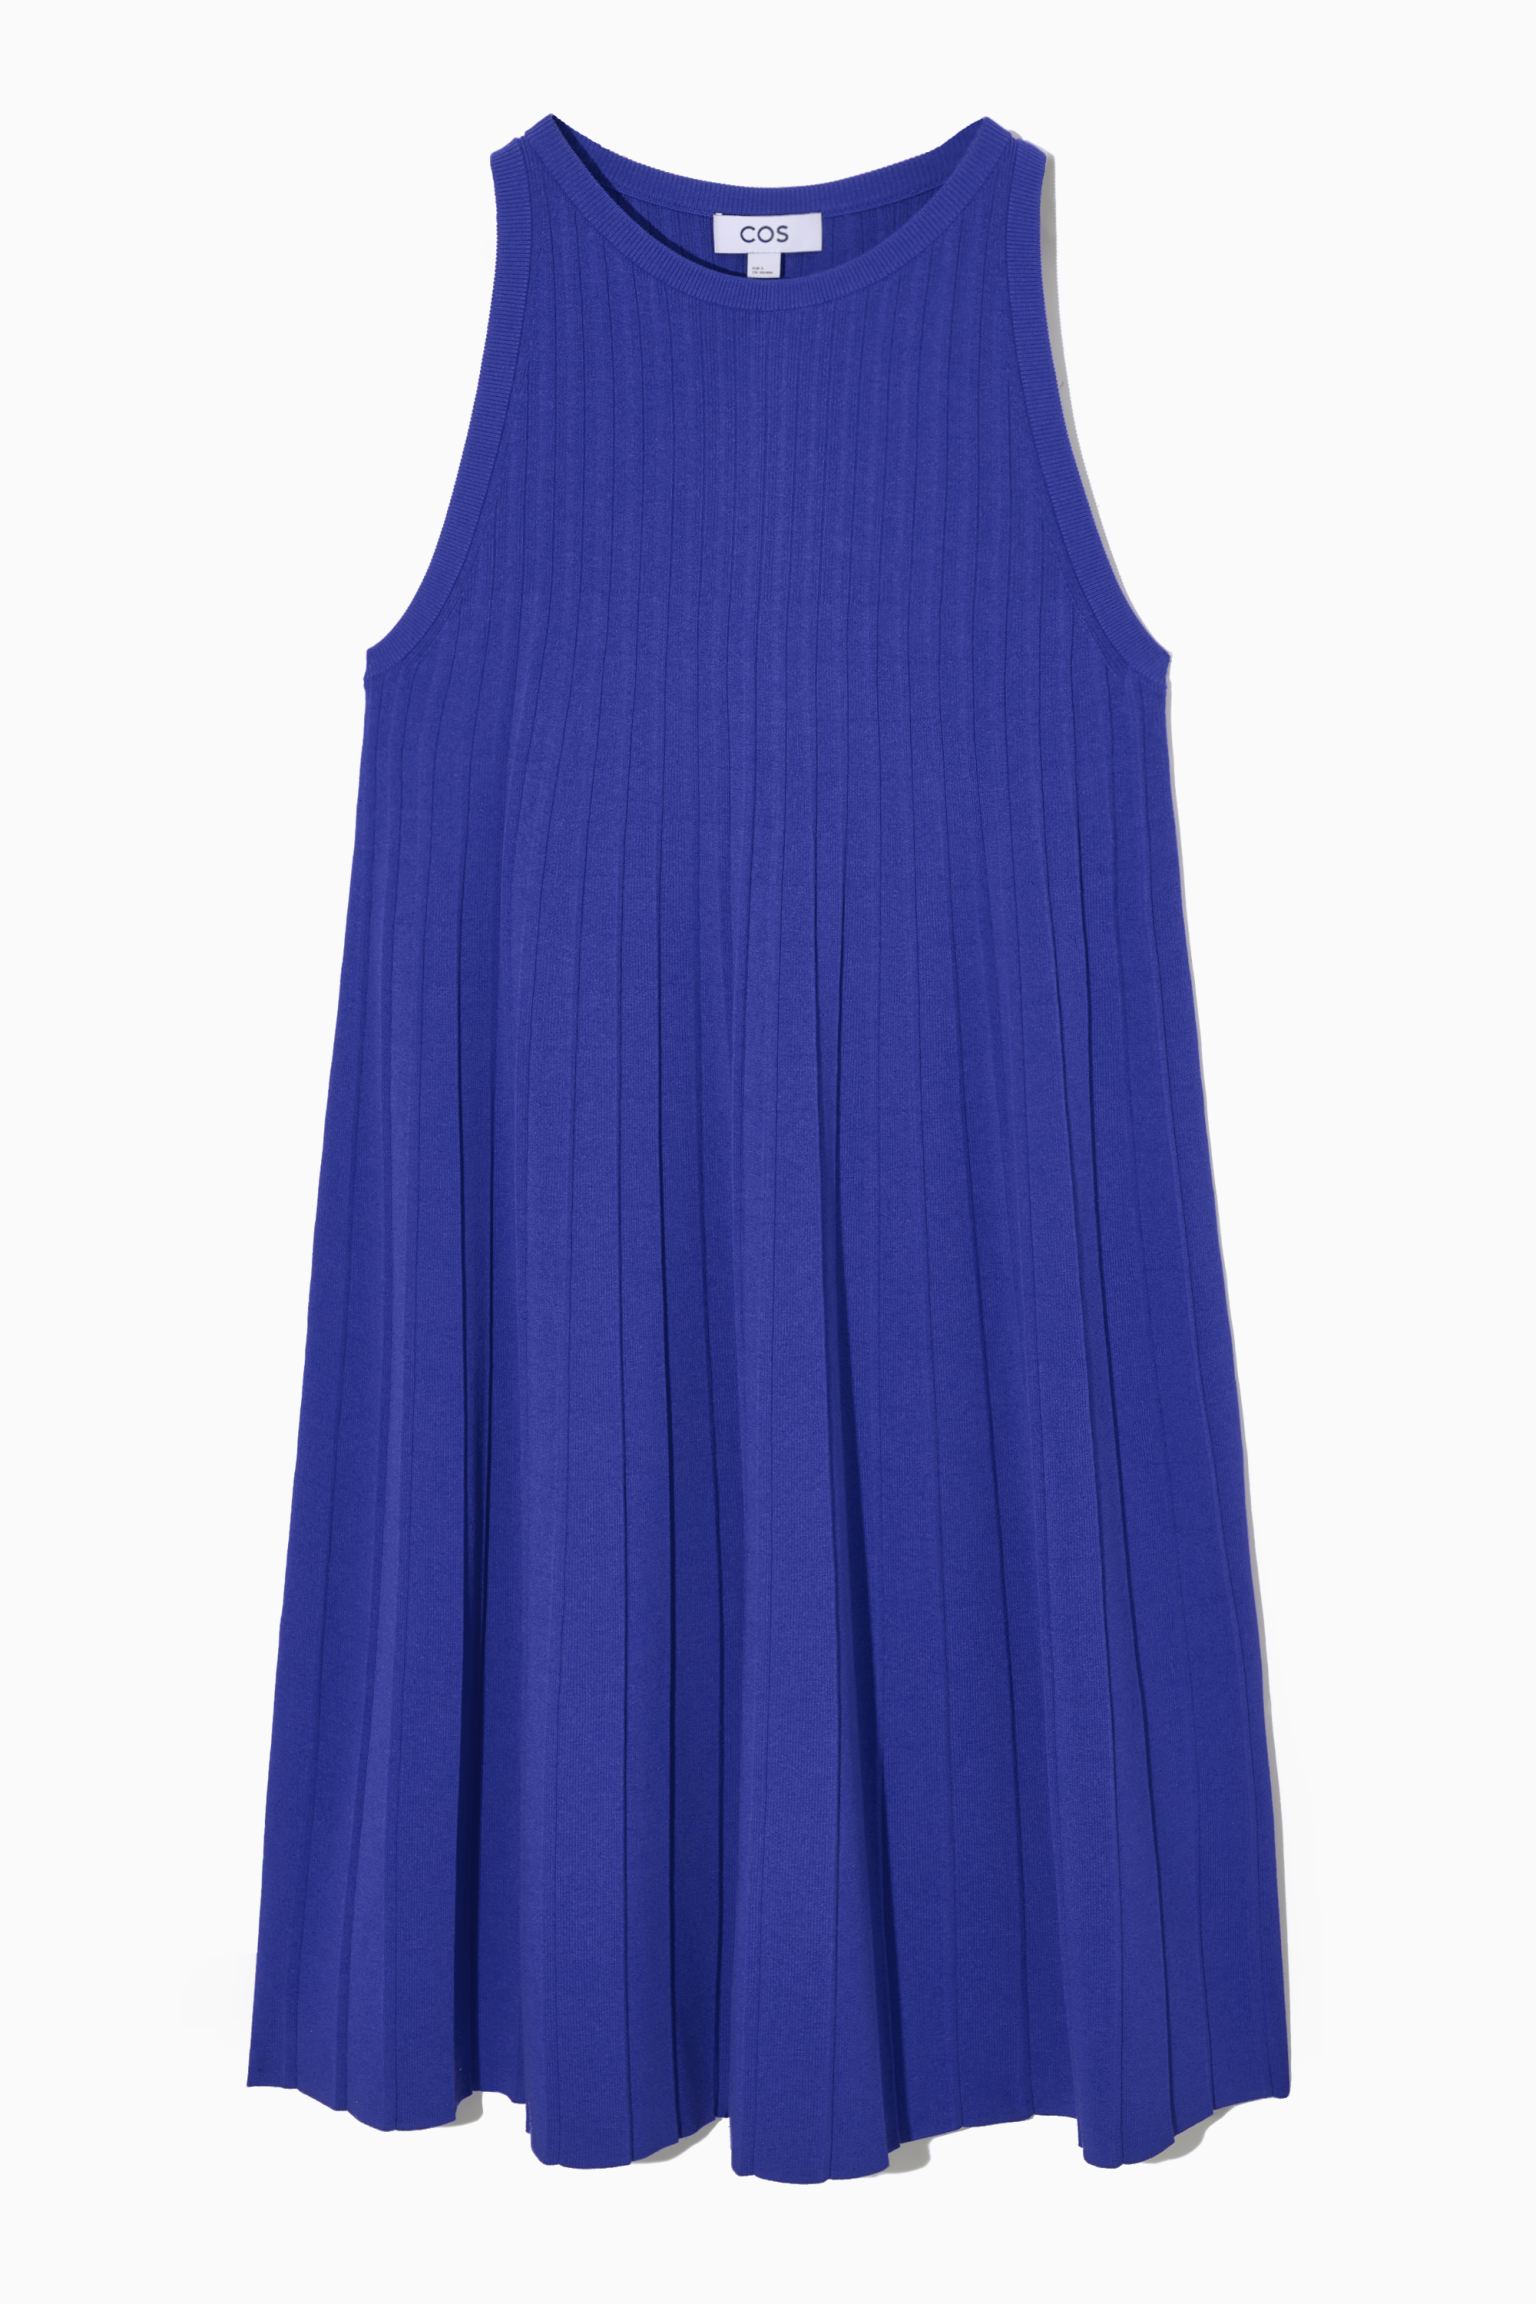 Платье женское COS 1083170006 синее S (доставка из-за рубежа)